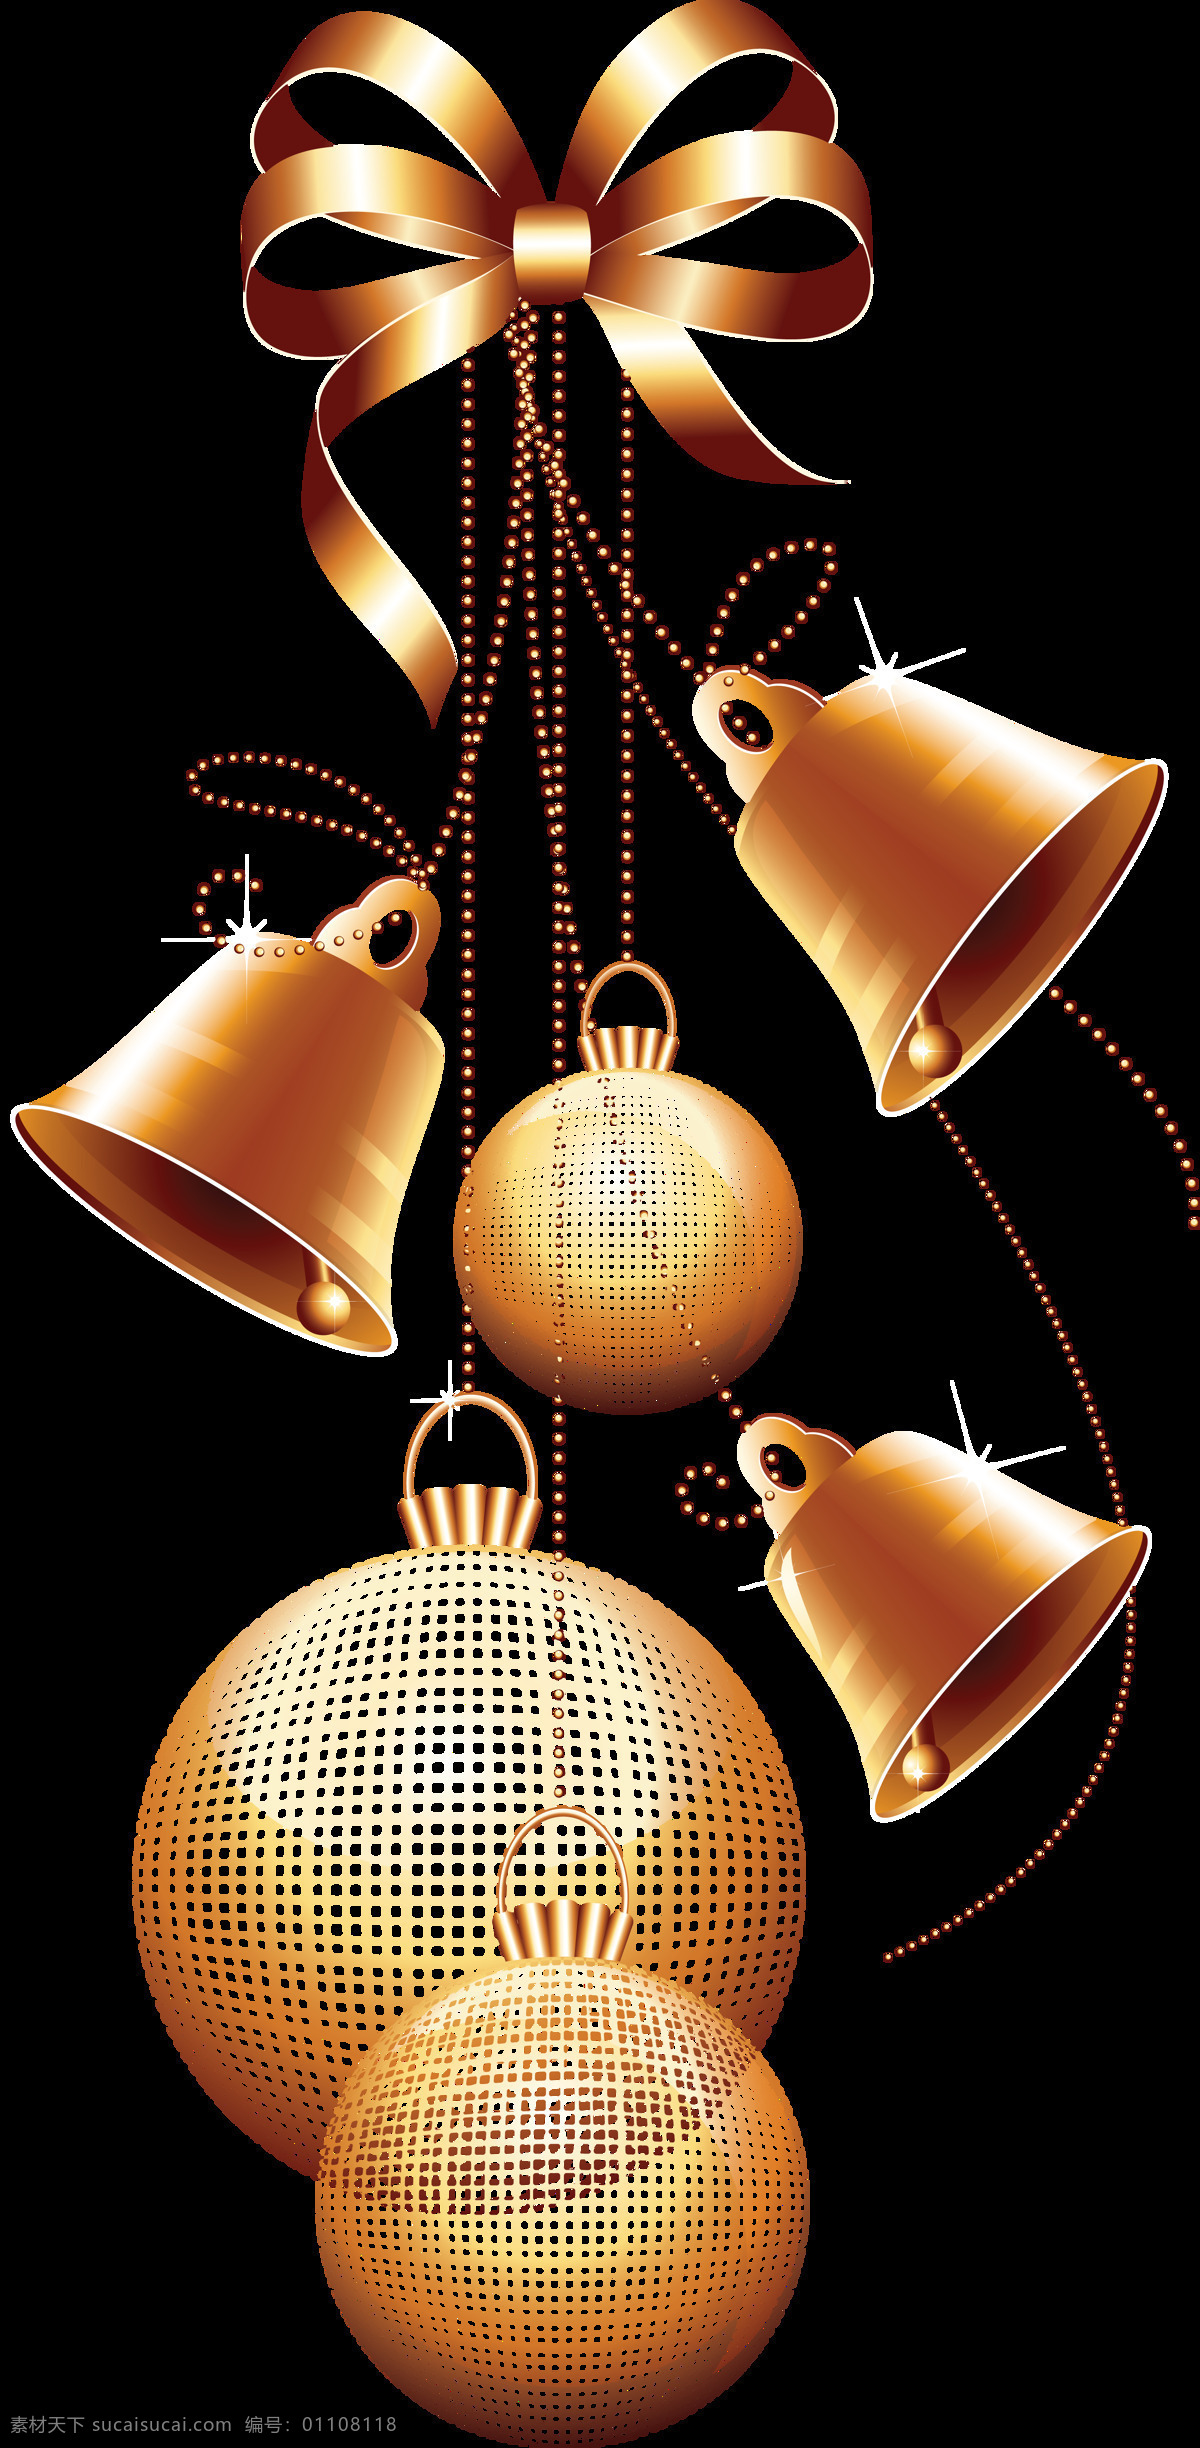 大气 圣诞 铃铛 吊球 装饰 元素 2018圣诞 卡通圣诞元素 设计素材 设计元素 圣诞png 圣诞吊球 圣诞节 圣诞铃铛 圣诞免抠元素 圣诞透明元素 圣诞装扮 新年快乐